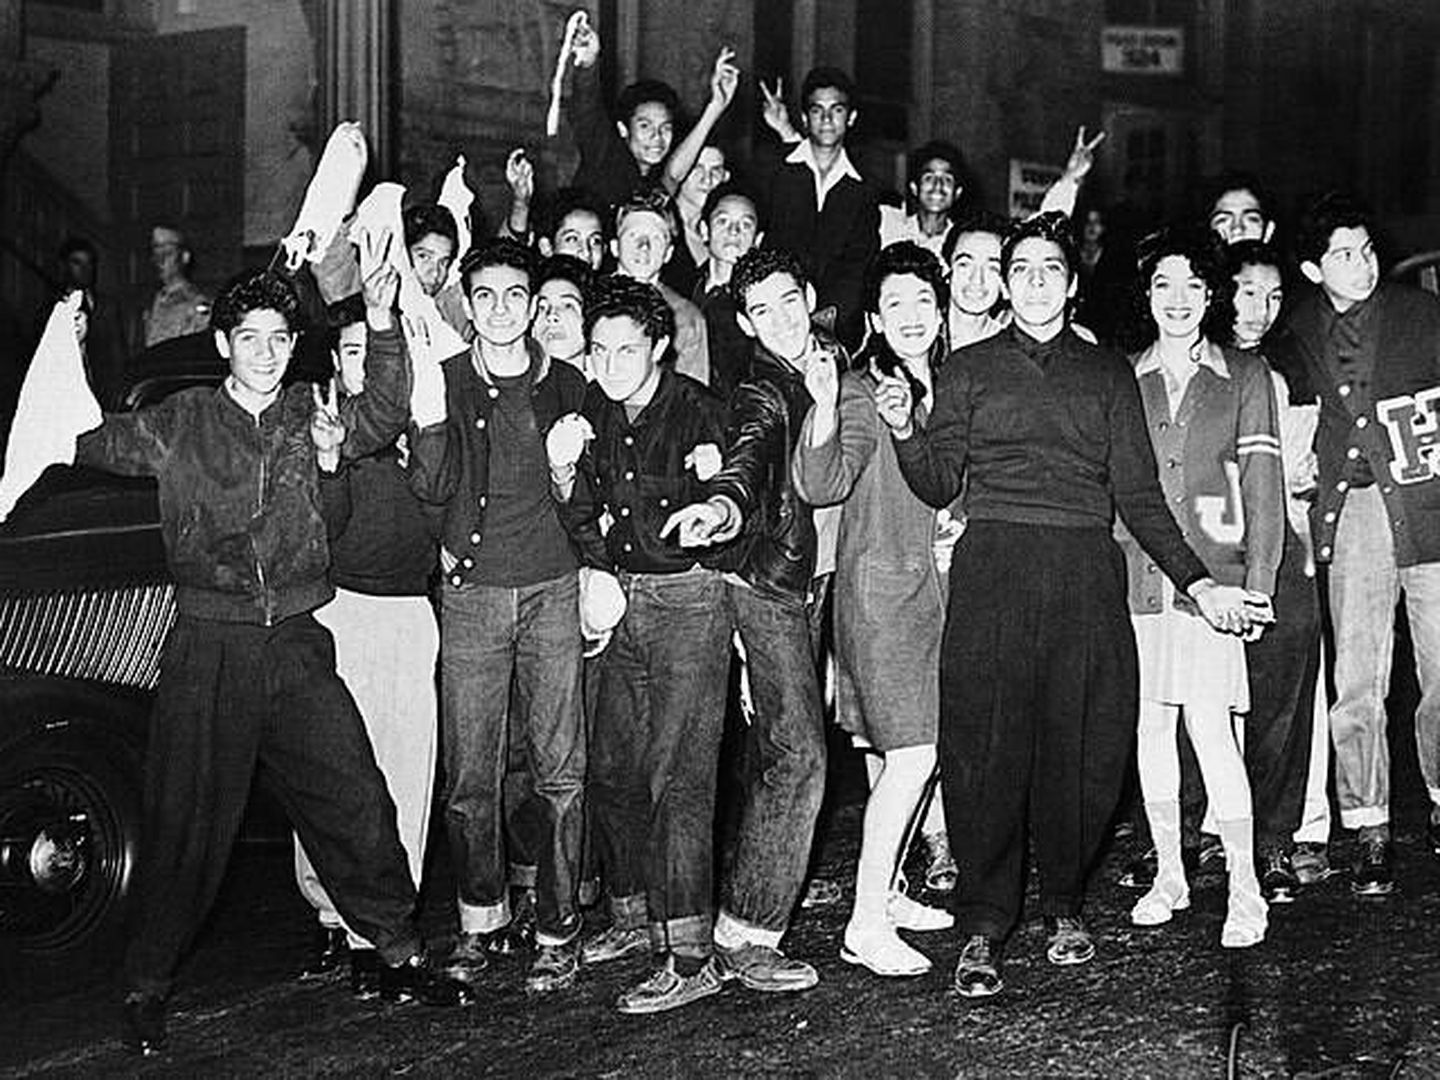 Los Zoot-Suiters y las Pachuca Rebels, durante una manifestación que acabó en disturbios, el 11 de junio de 1943 en Los Angeles. (Wikimedia Commons)